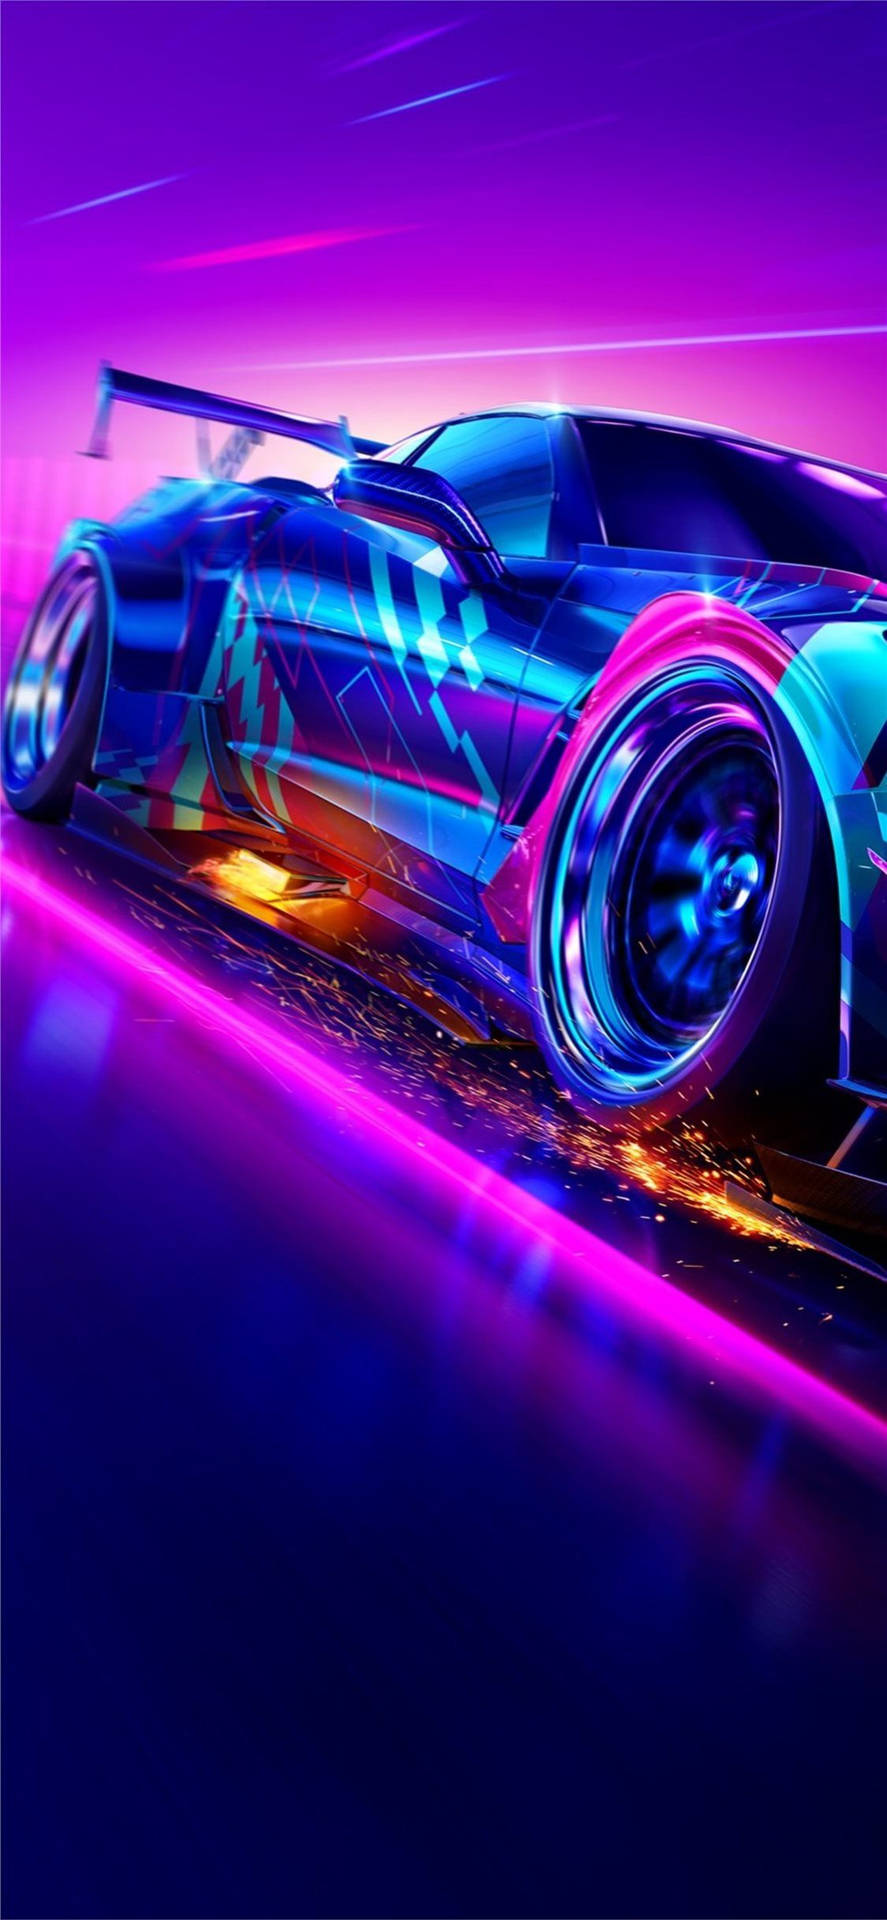 Inspired Wallpaper: Neon Chevrolet Corvette inspireret baggrundsbillede til iPhone X. Wallpaper